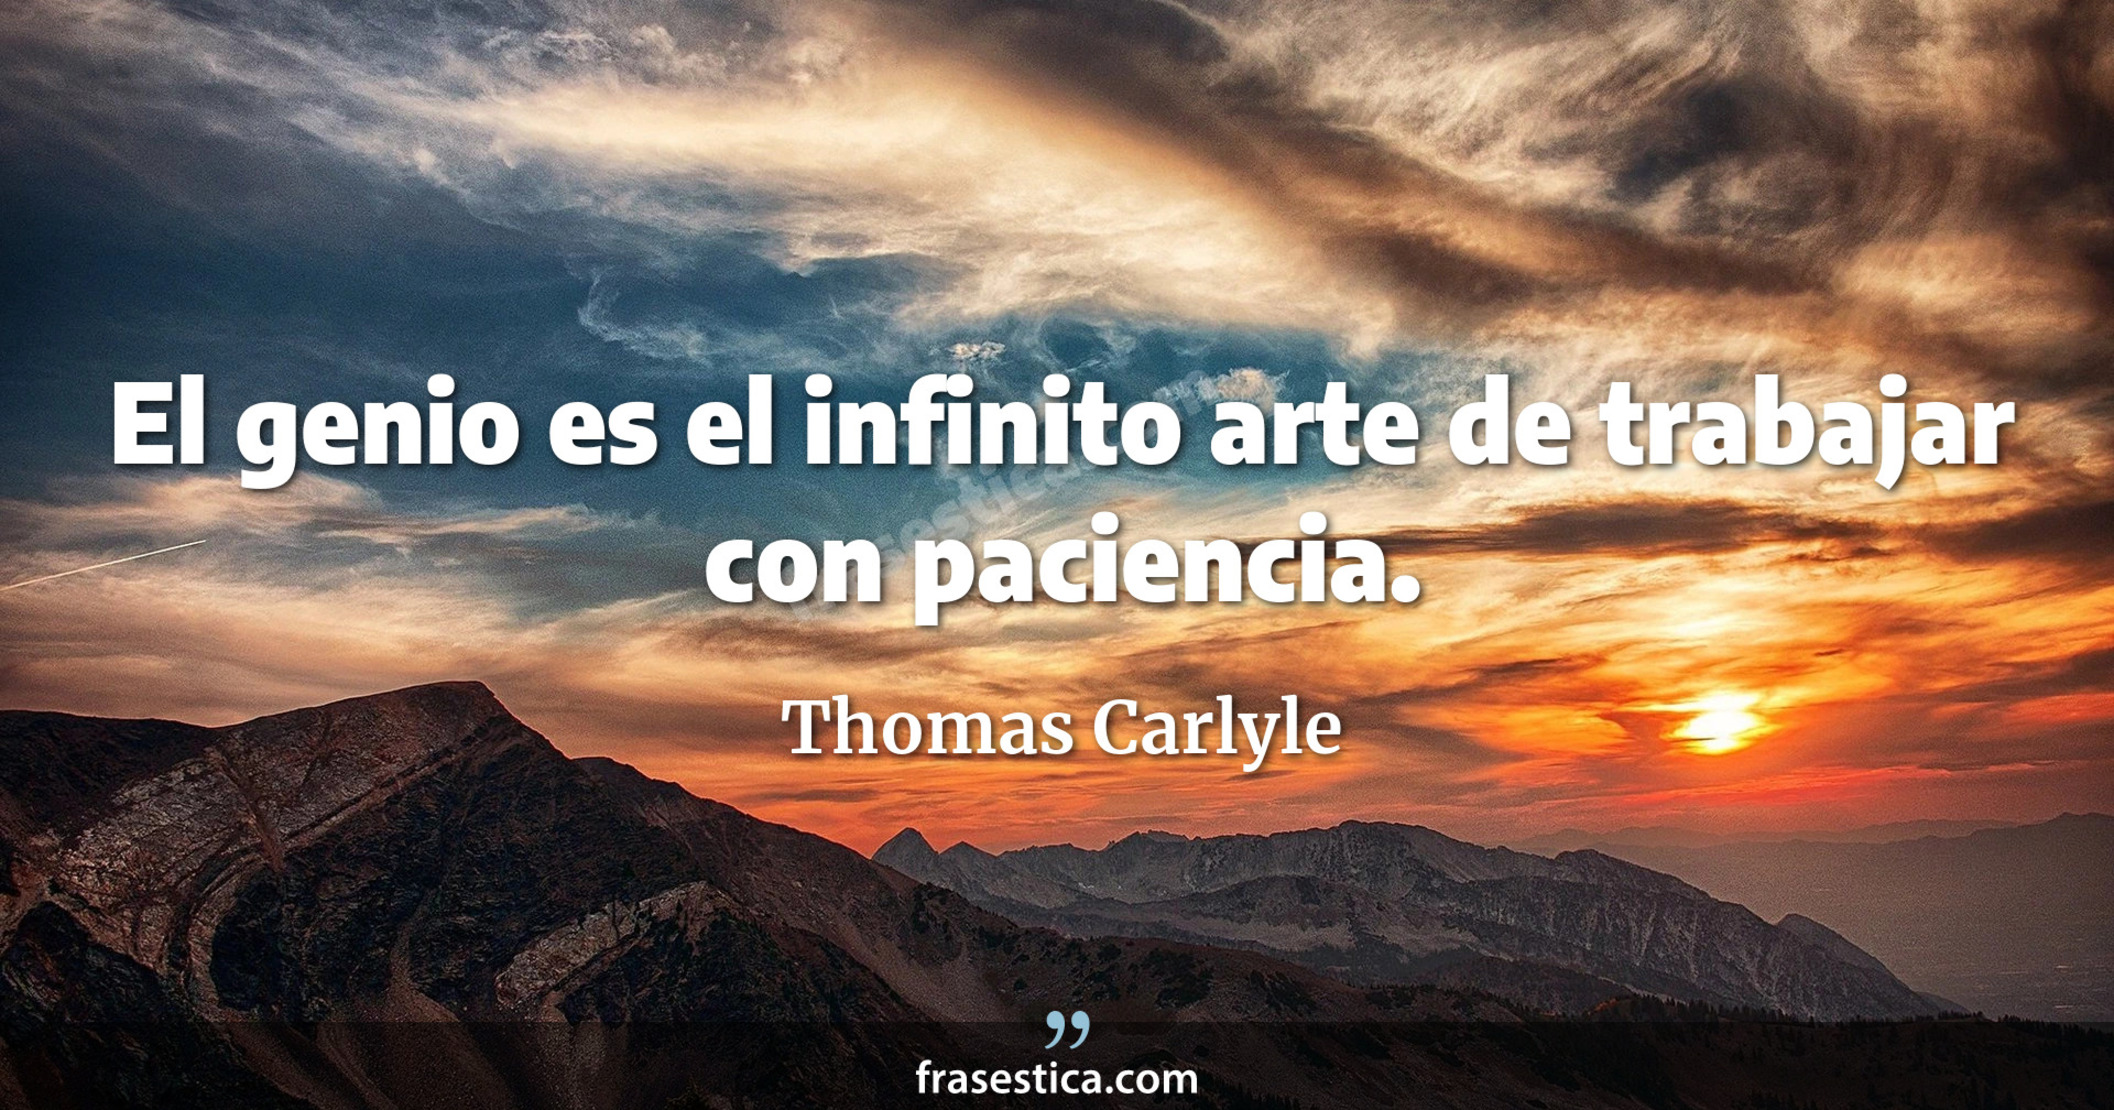 El genio es el infinito arte de trabajar con paciencia. - Thomas Carlyle